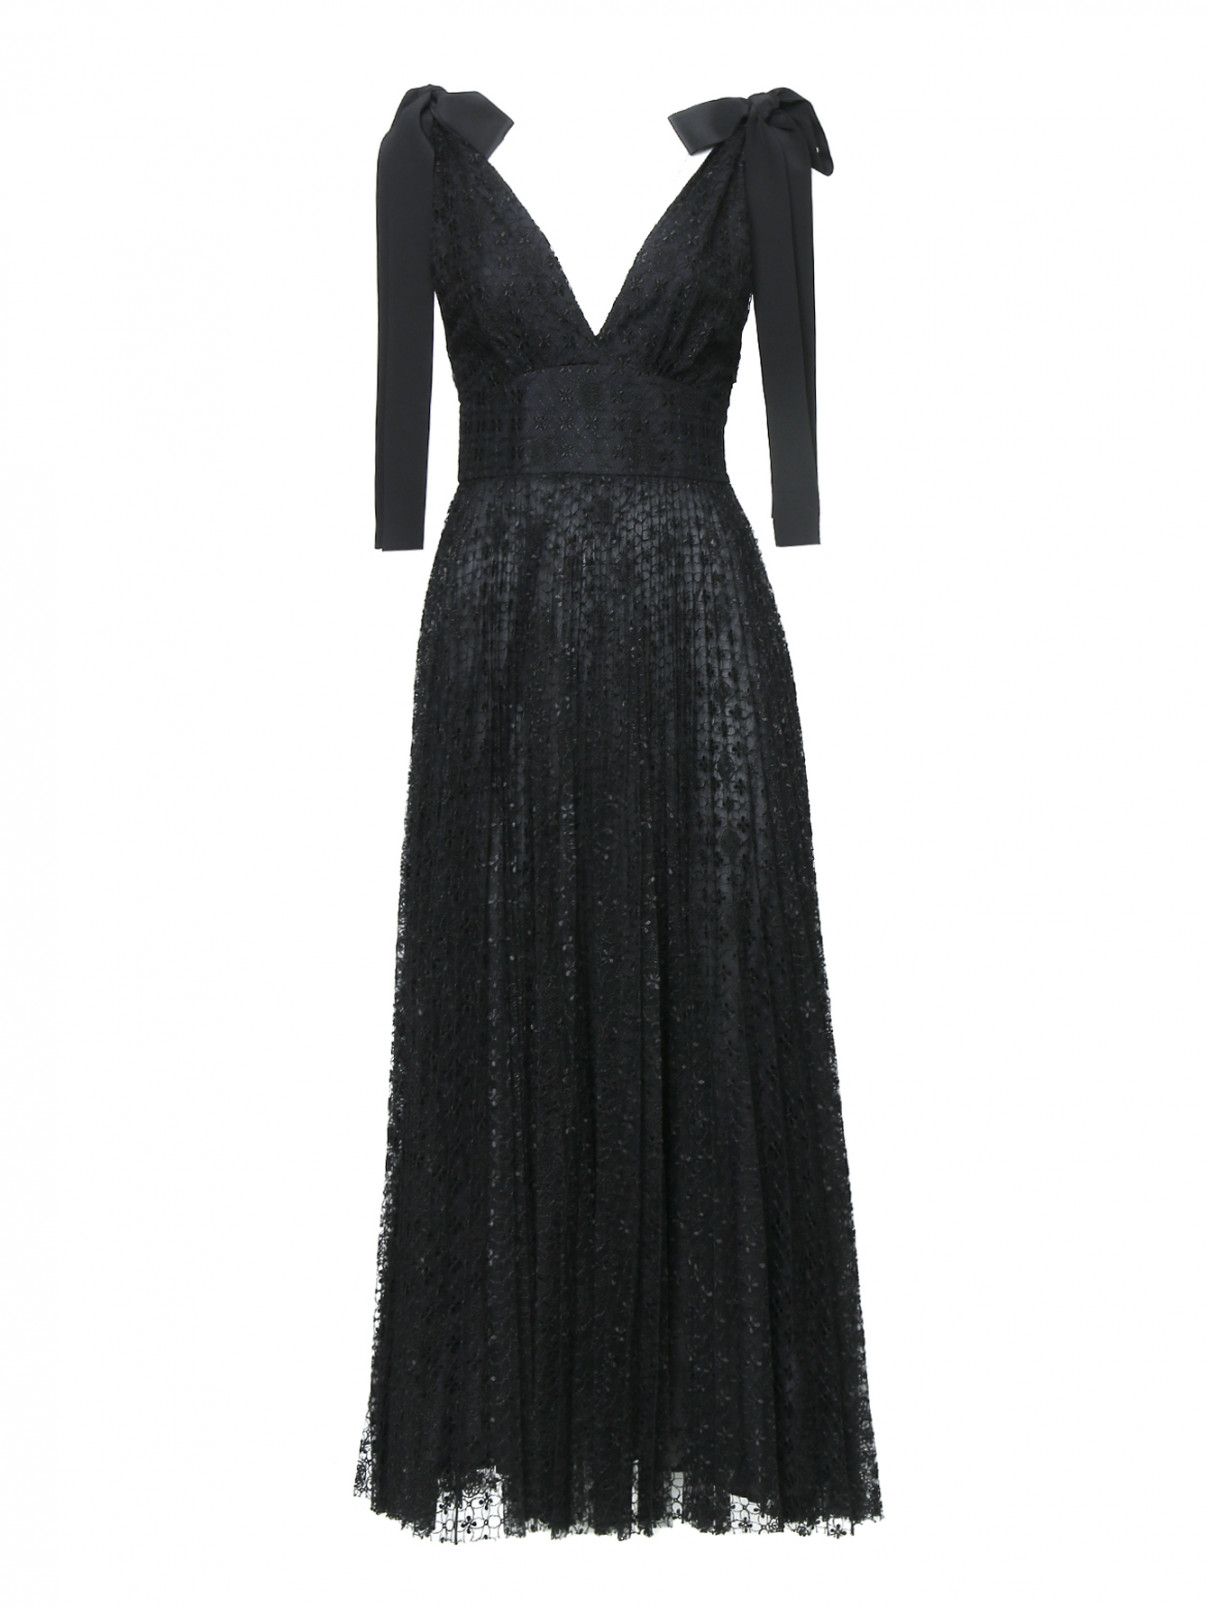 Платье из вискозы, шелка и хлопка с вышивкой Elie Saab  –  Общий вид  – Цвет:  Черный